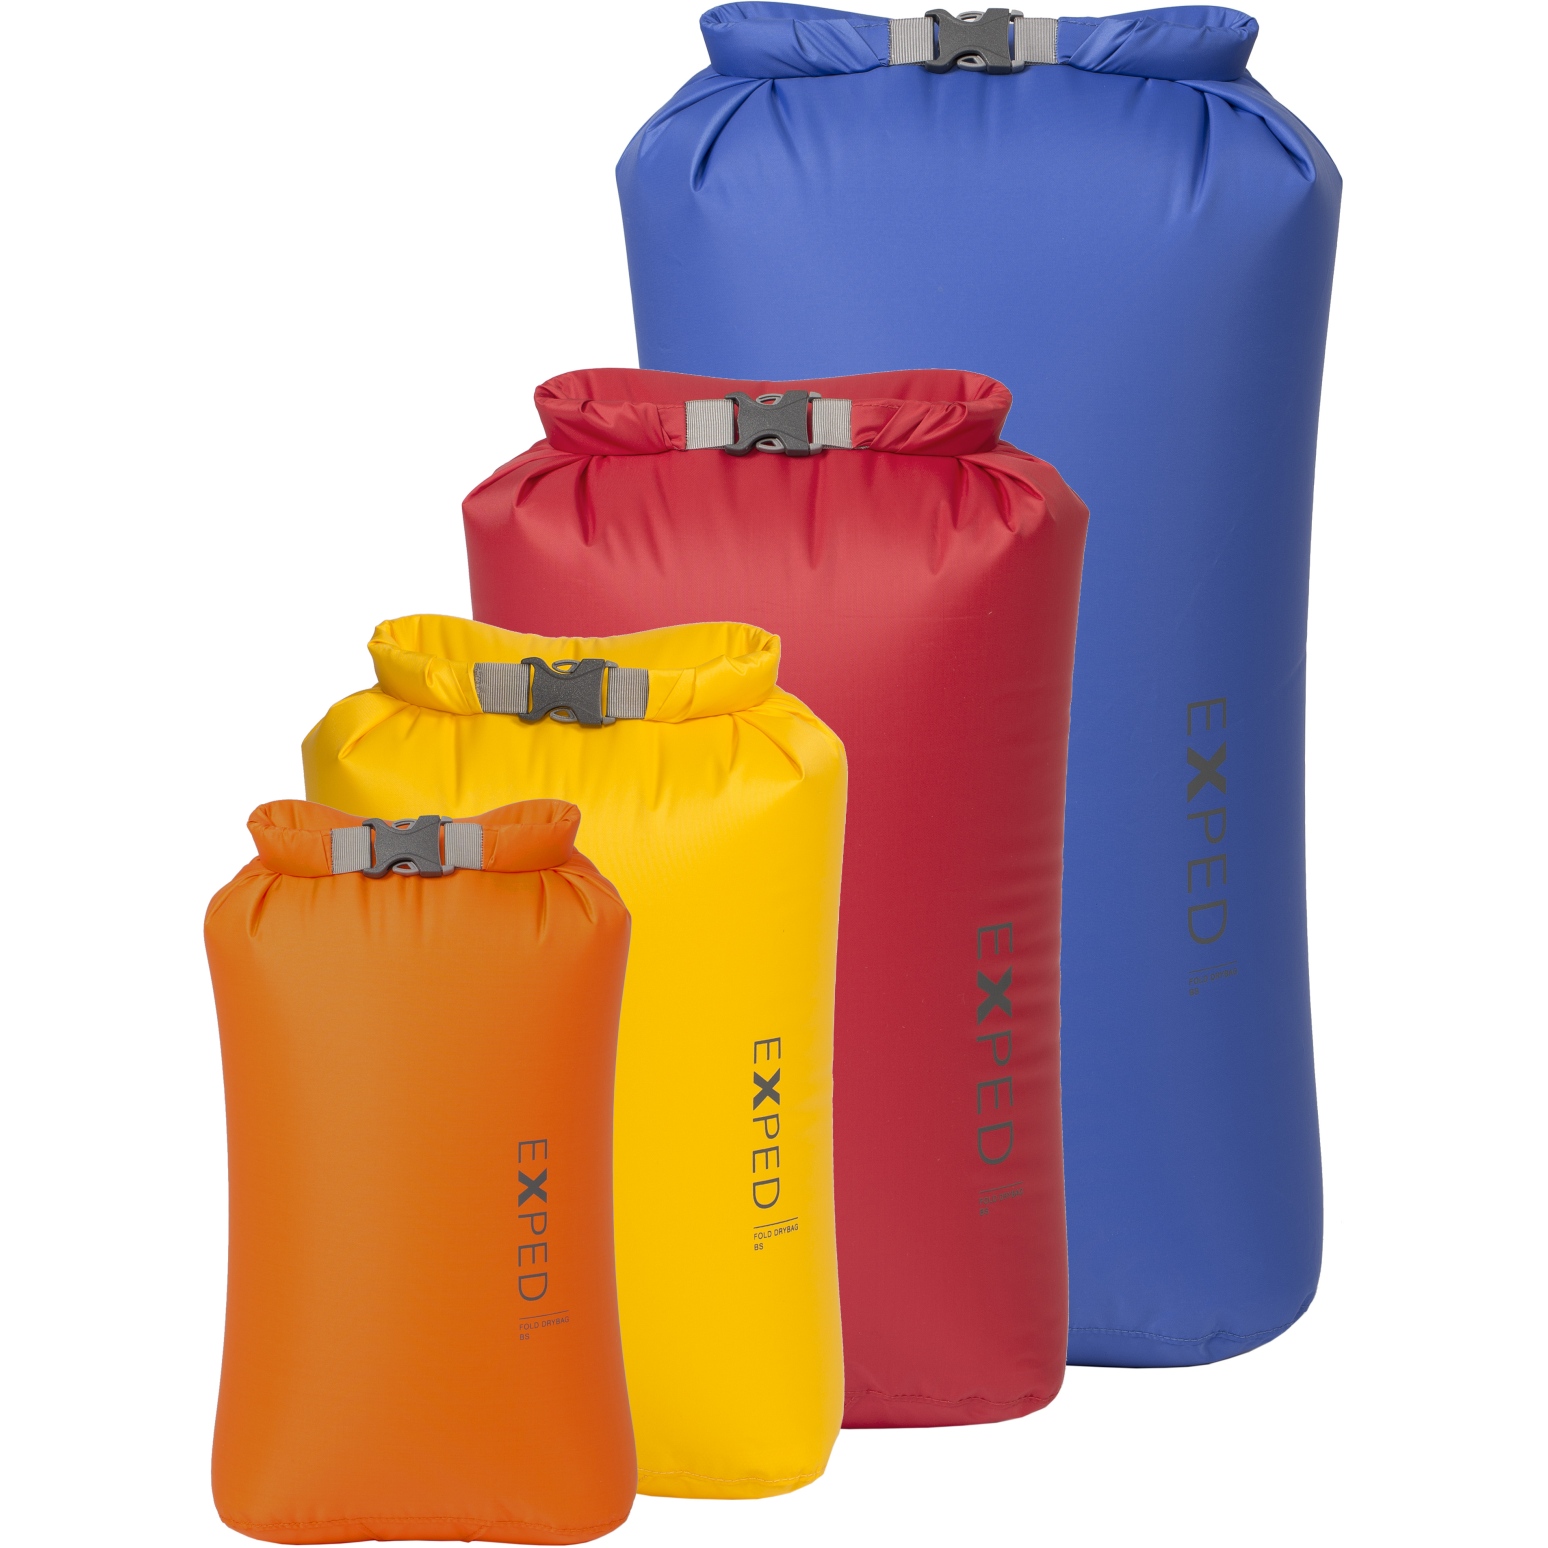 Produktbild von Exped Fold Drybag BS Packsack (4-er Pack) - XS - L